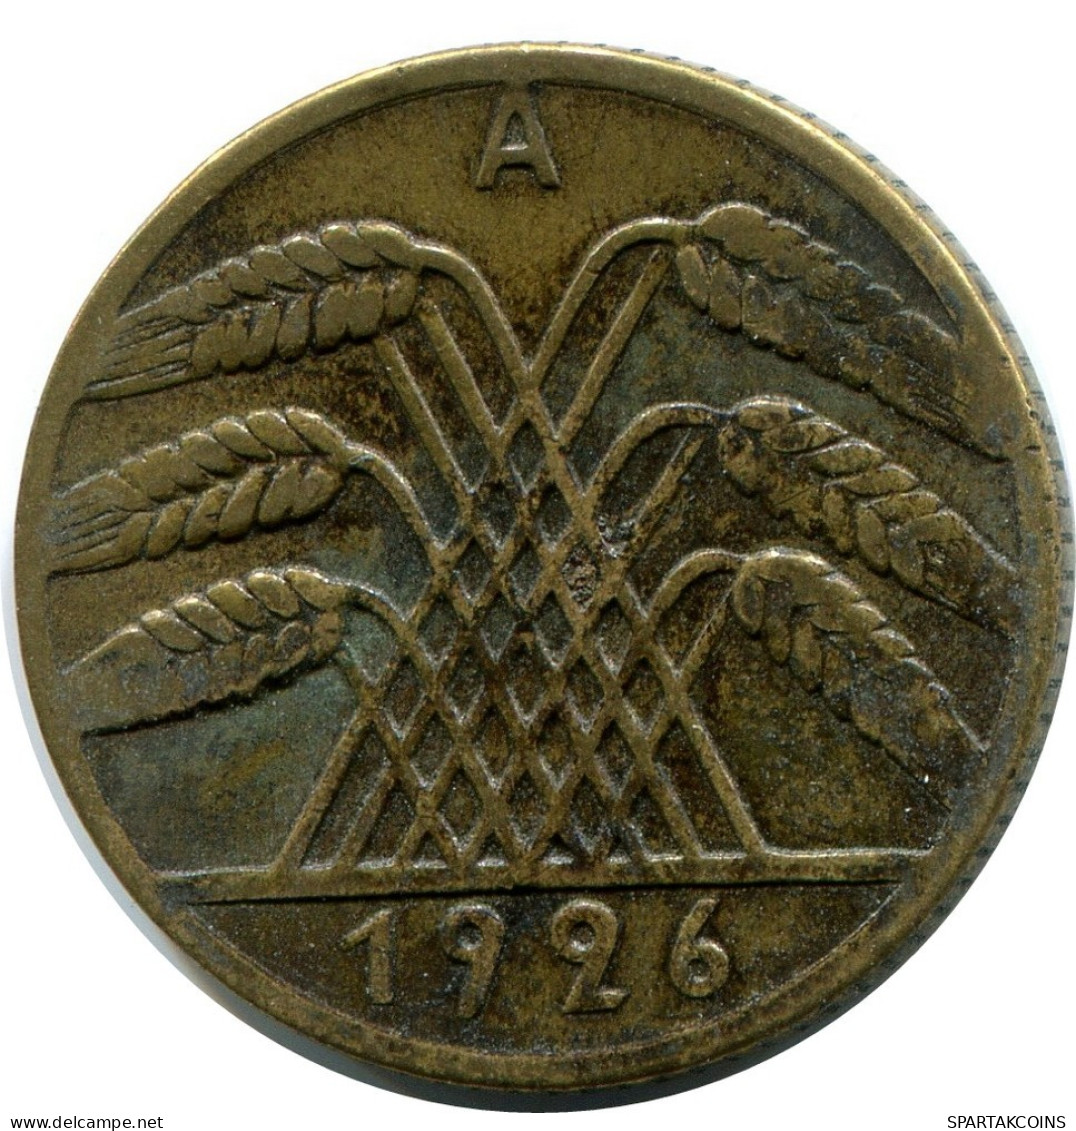 10 REICHSPFENNIG 1926 A DEUTSCHLAND Münze GERMANY #DB939.D.A - 10 Rentenpfennig & 10 Reichspfennig